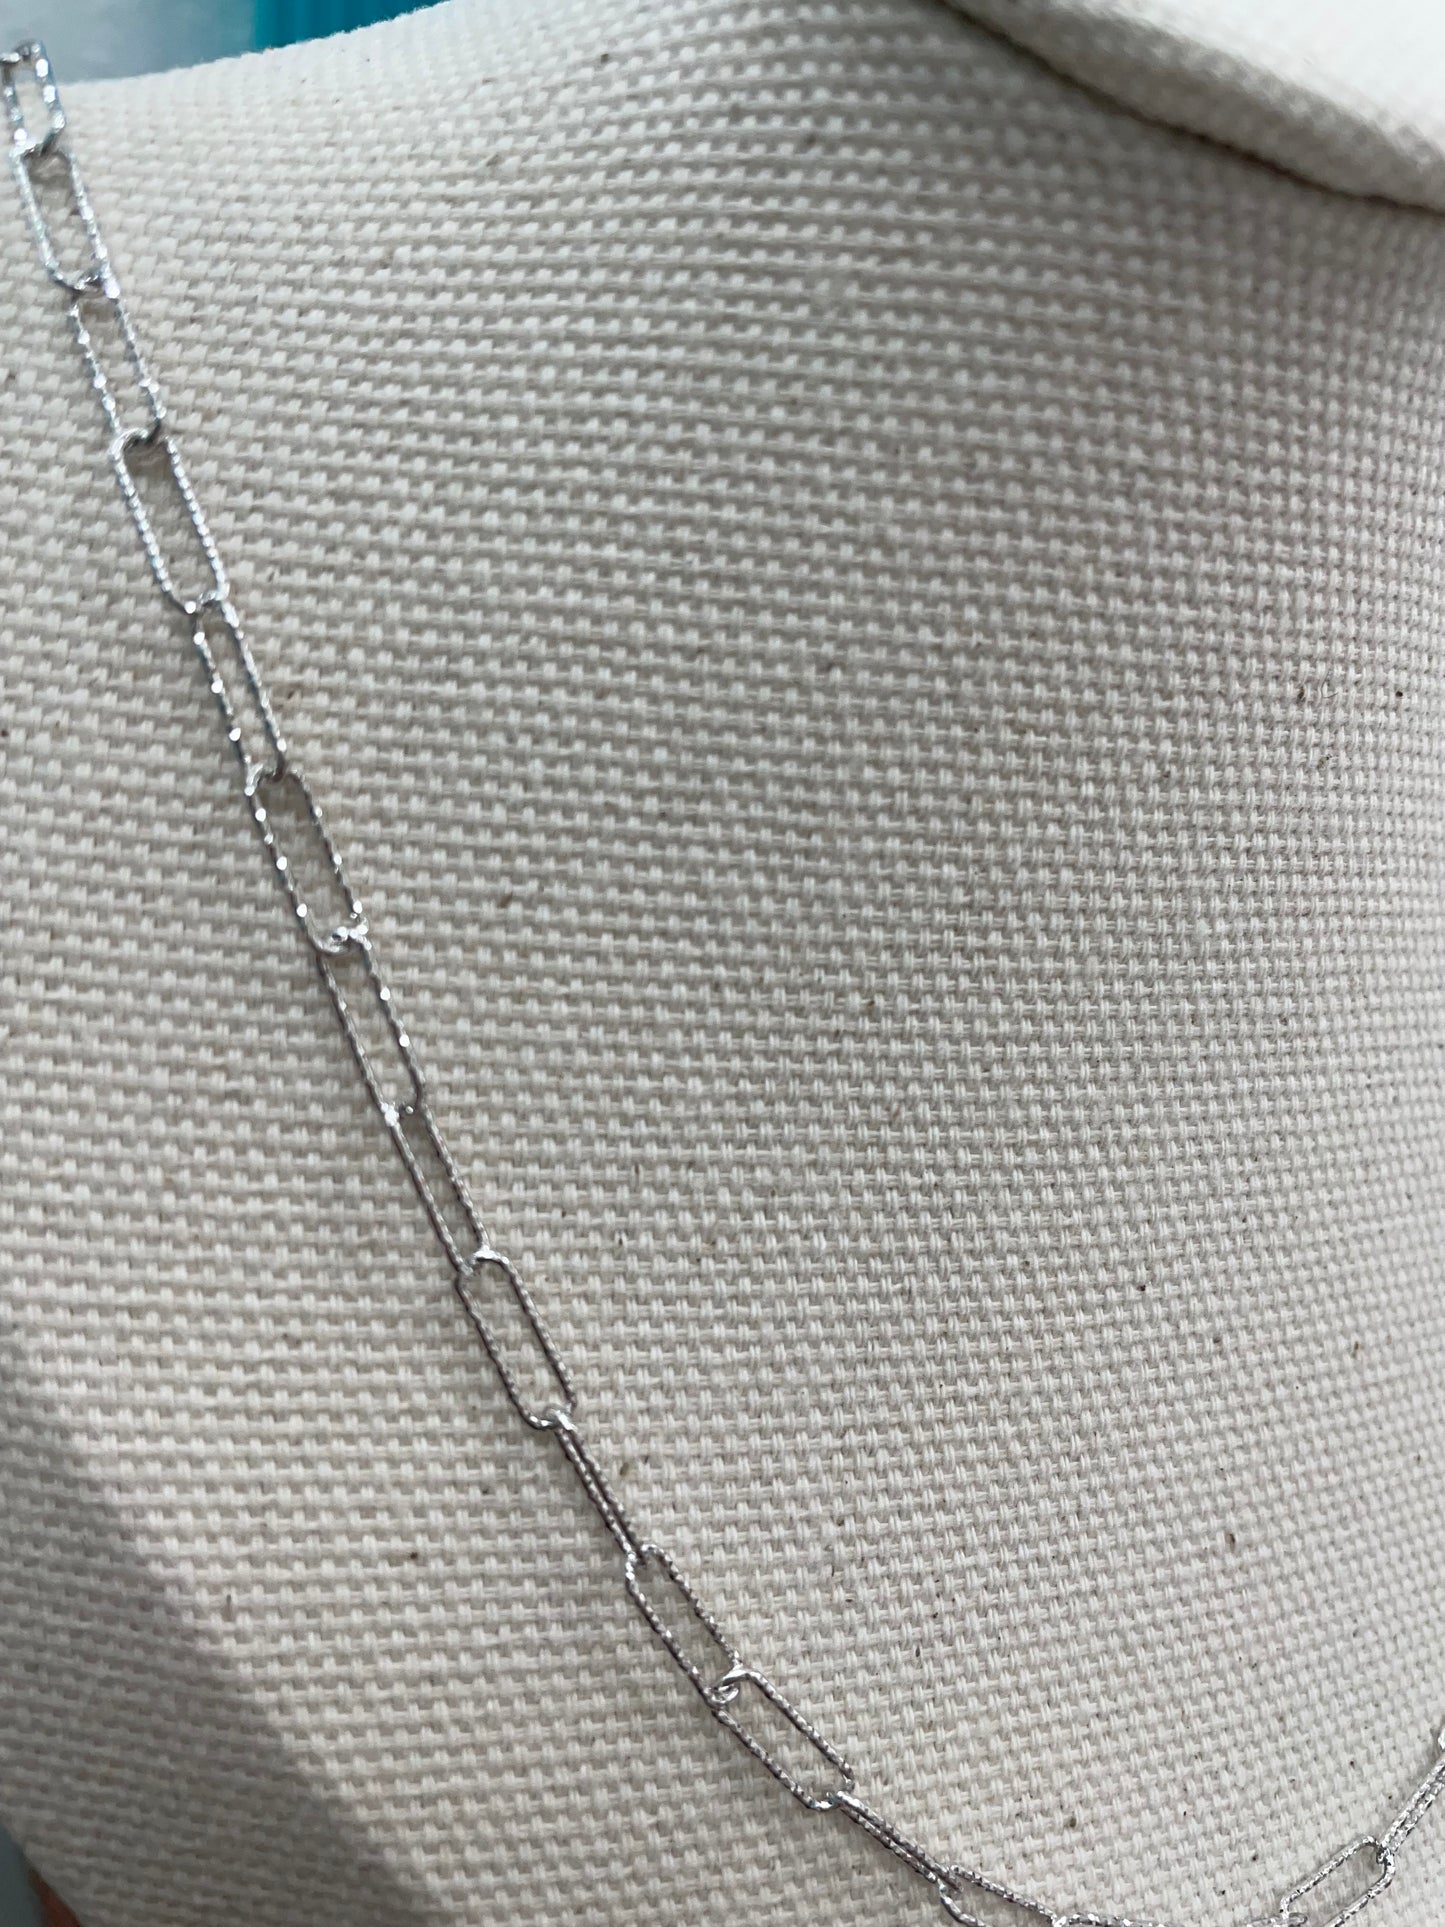 Rada Link Necklace in silver